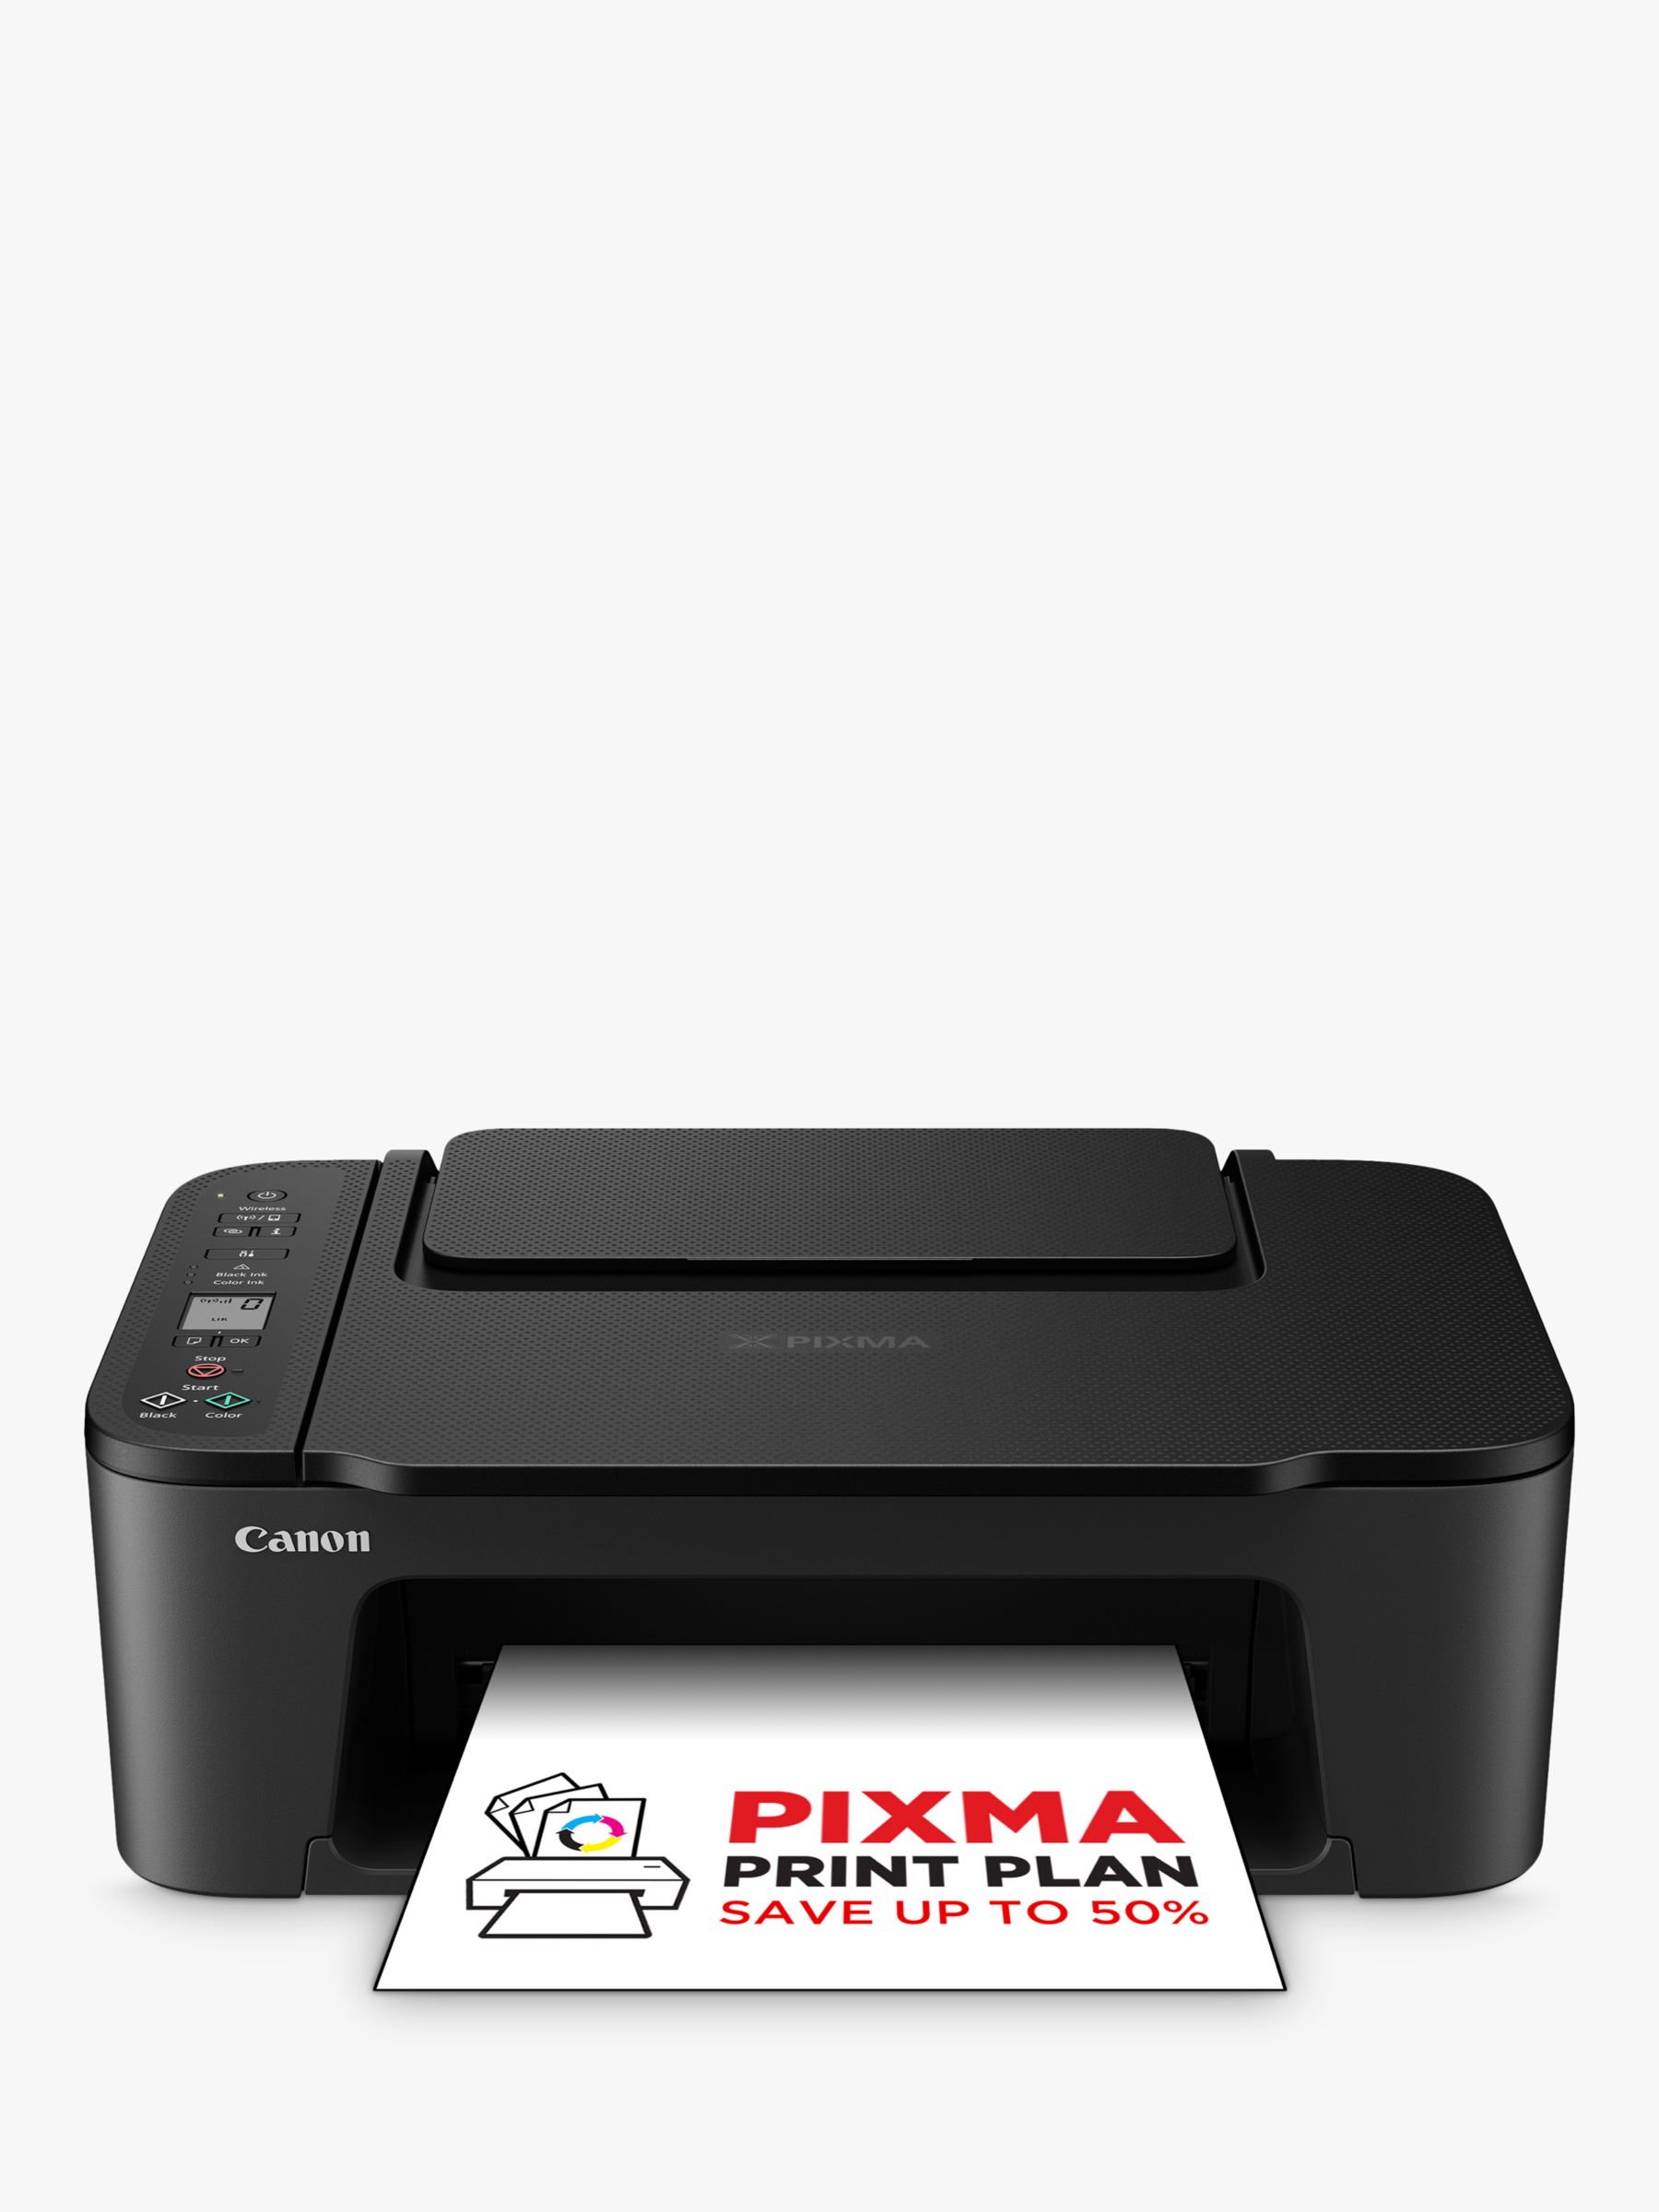 Canon PIXMA TS3550i Printer, Black Wi-Fi All-in-One Wireless